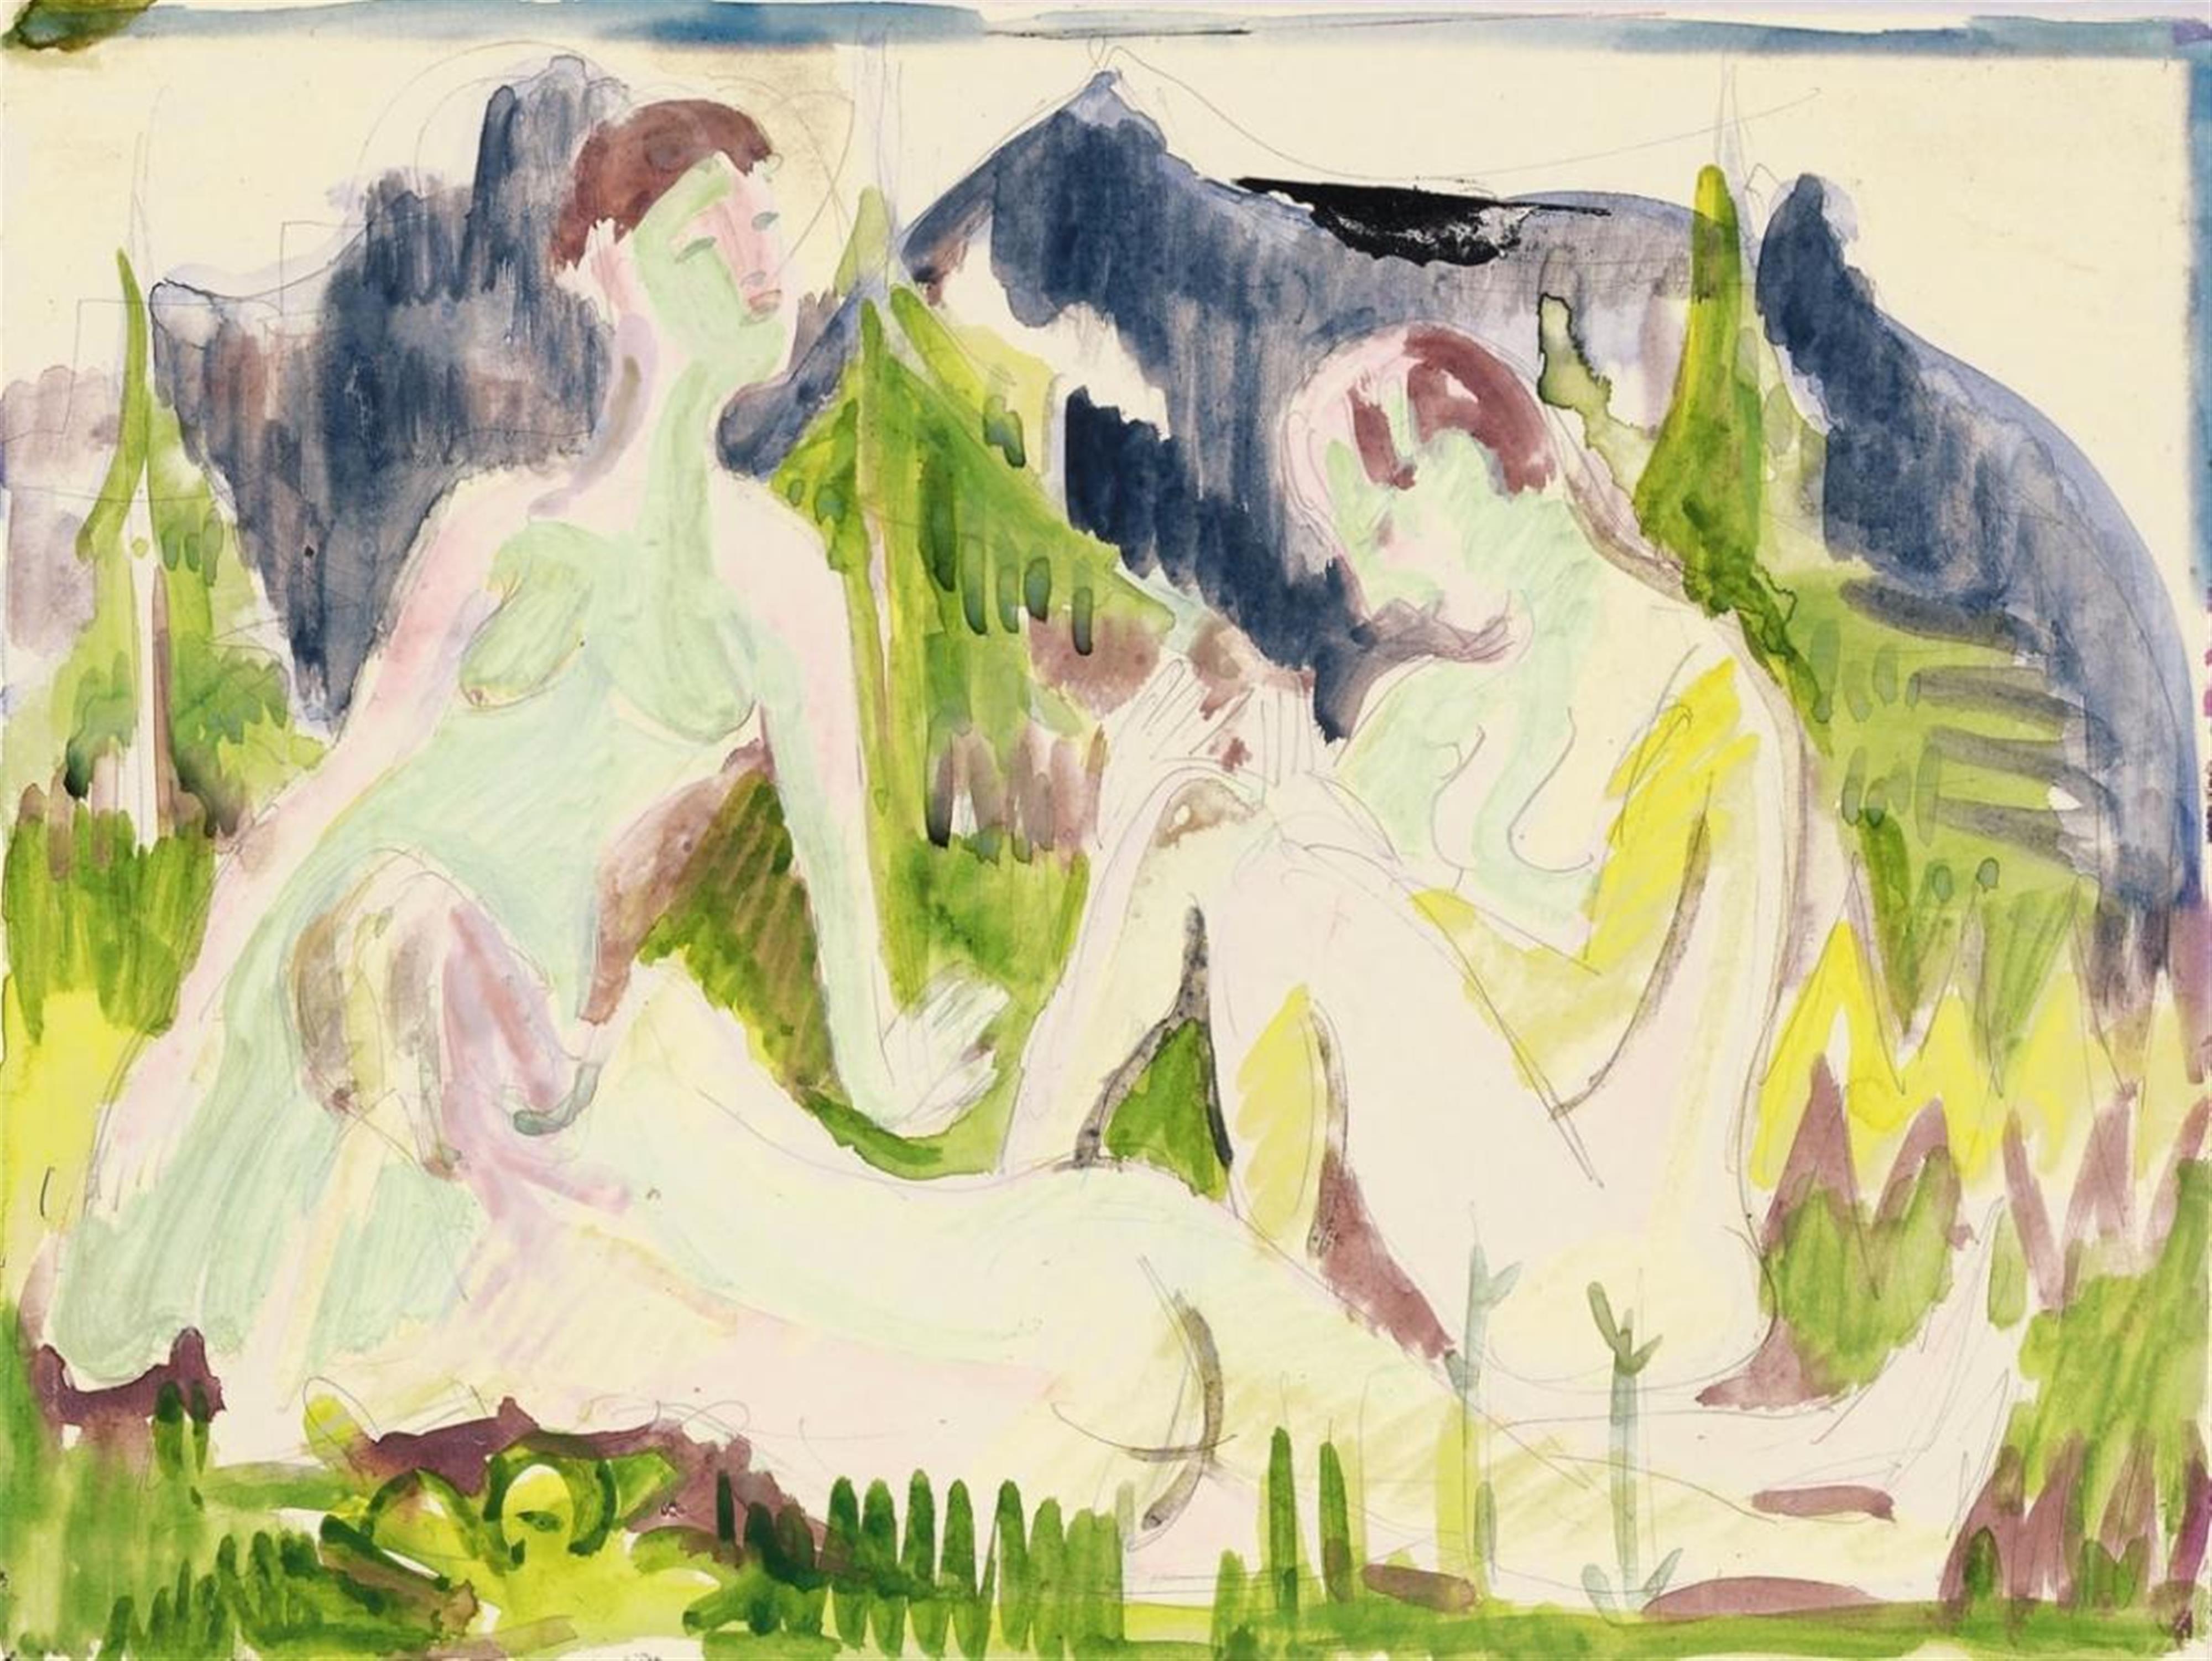 Ernst Ludwig Kirchner - Drei Badende (Akte in Gebirgslandschaft) - image-1